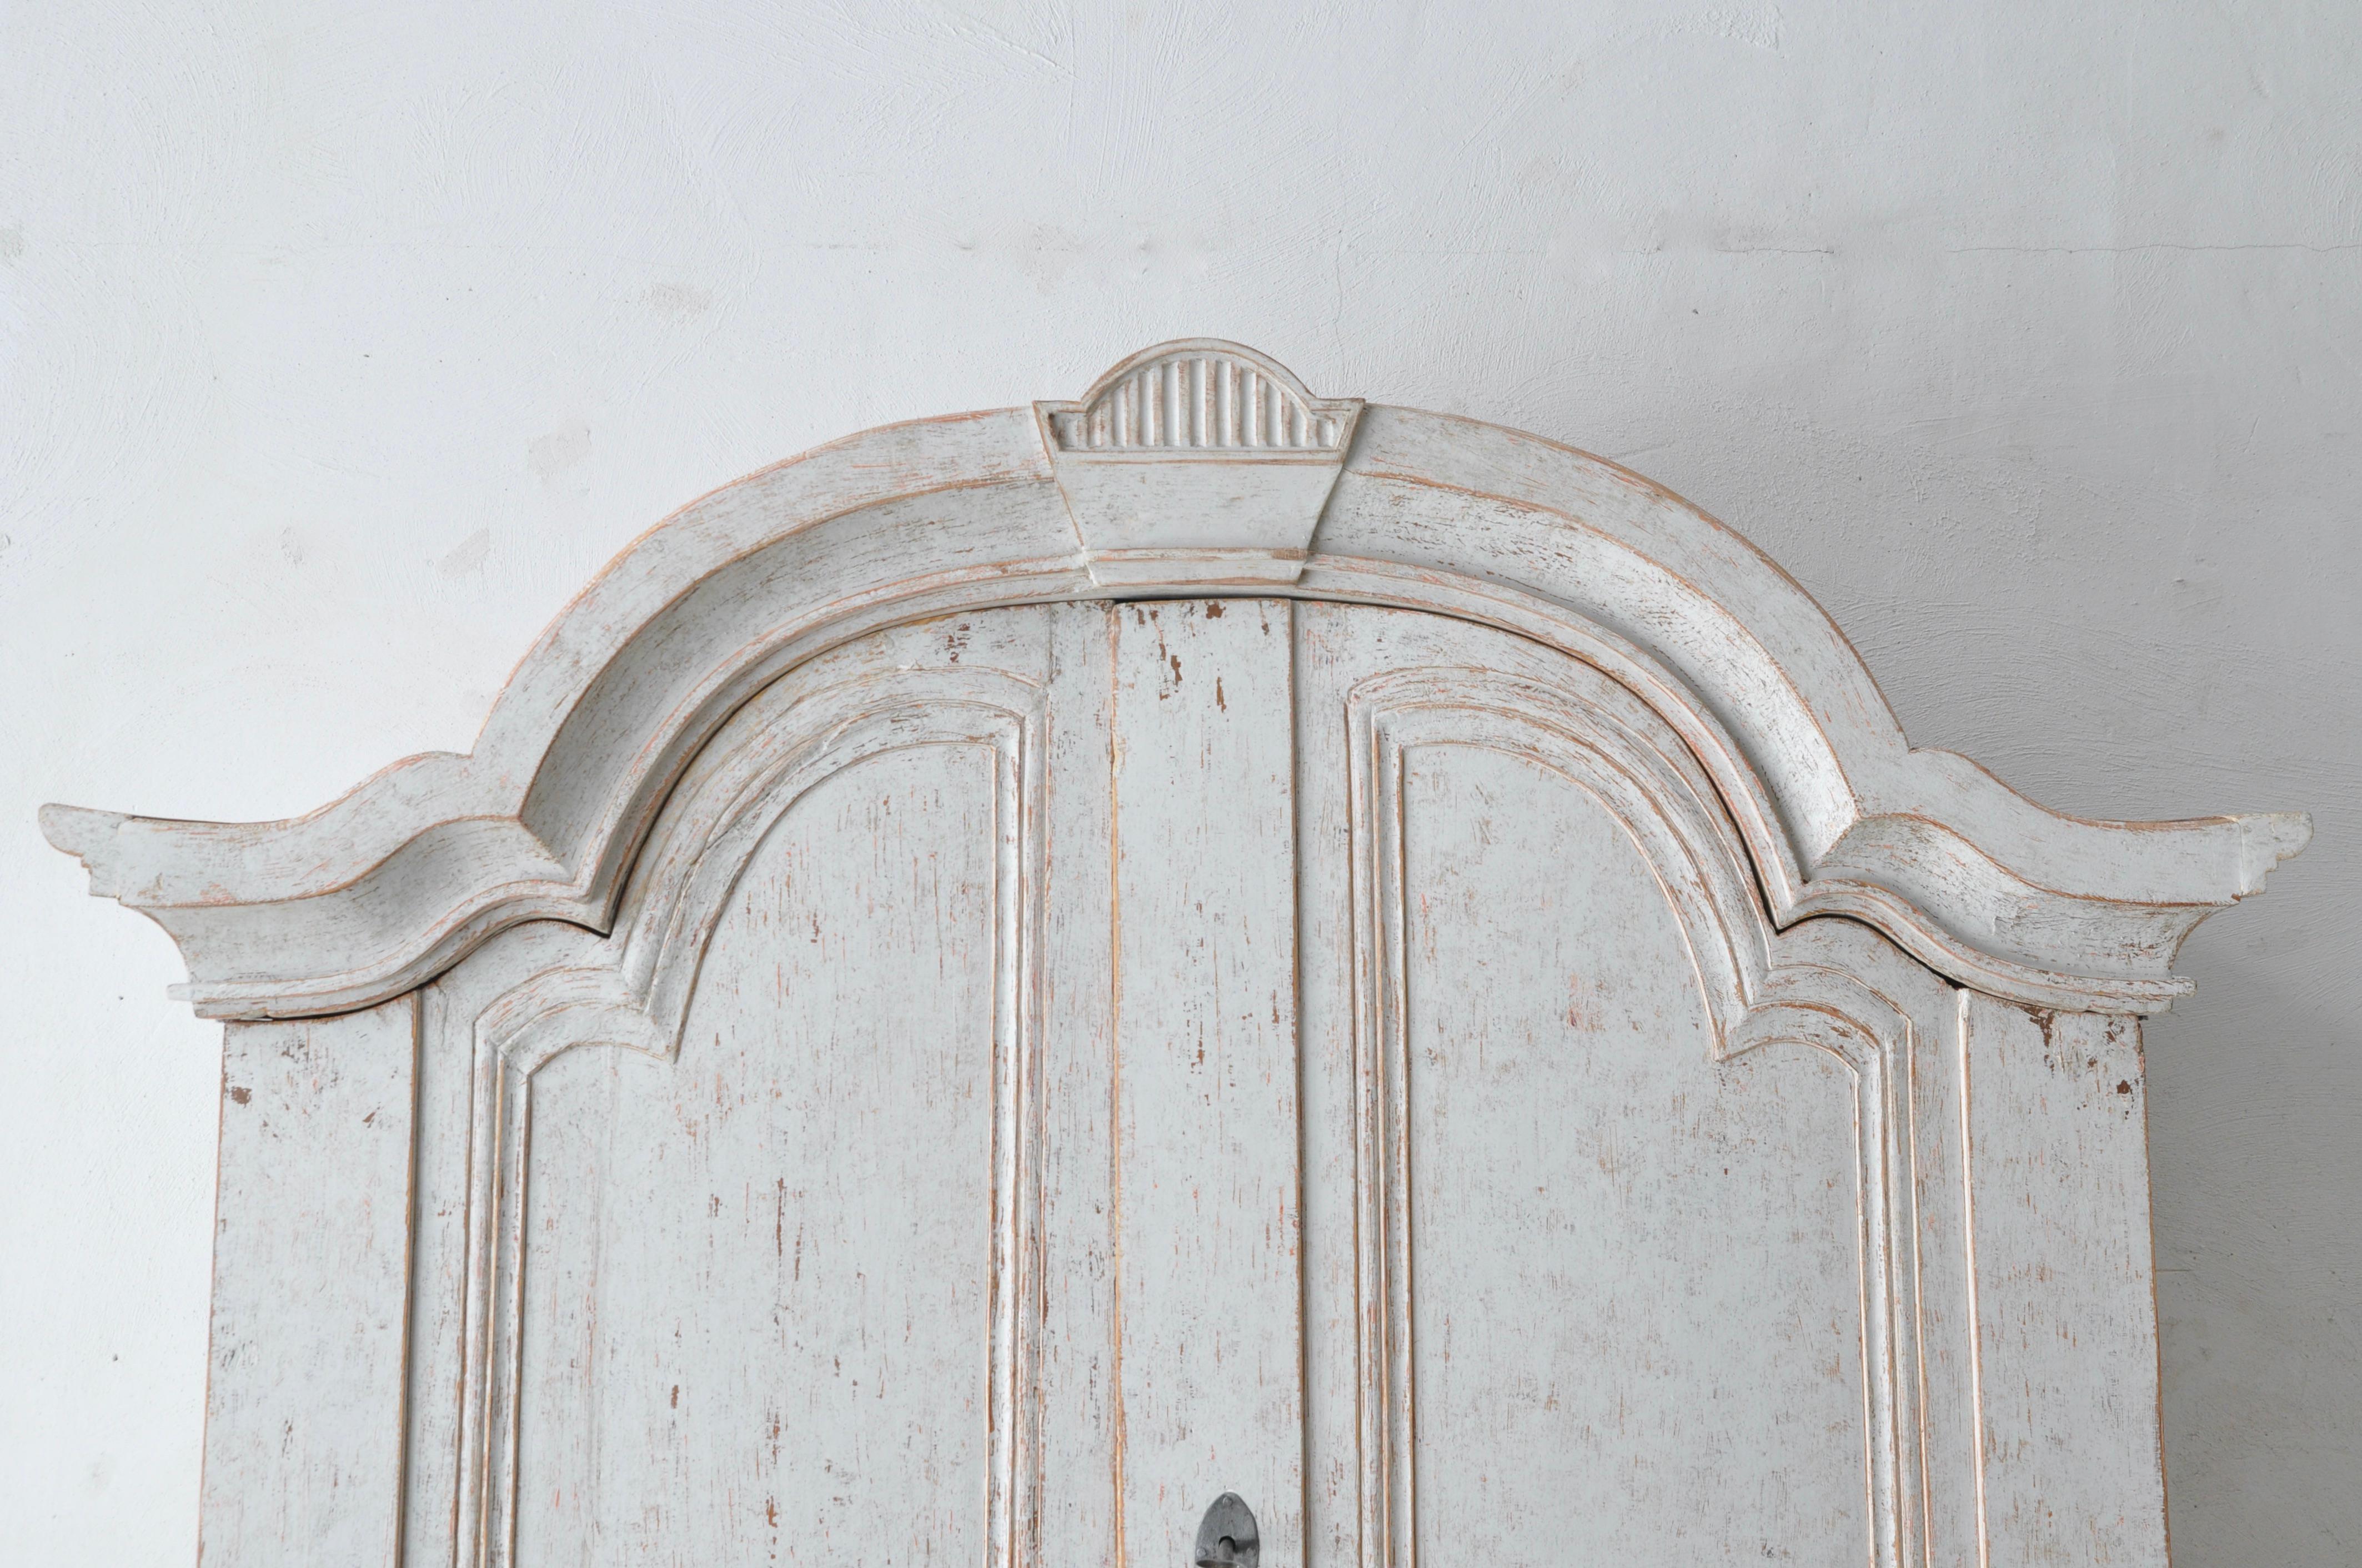 Ein schwedischer großer Sekretär aus Värmland um 1800, grau lackiert, mit geschnitzter Haube, vier Türen, schräger Front und Klammerfüßen. Lassen Sie sich von der schlichten Eleganz des schwedischen gustavianischen Designs mit diesem exquisiten